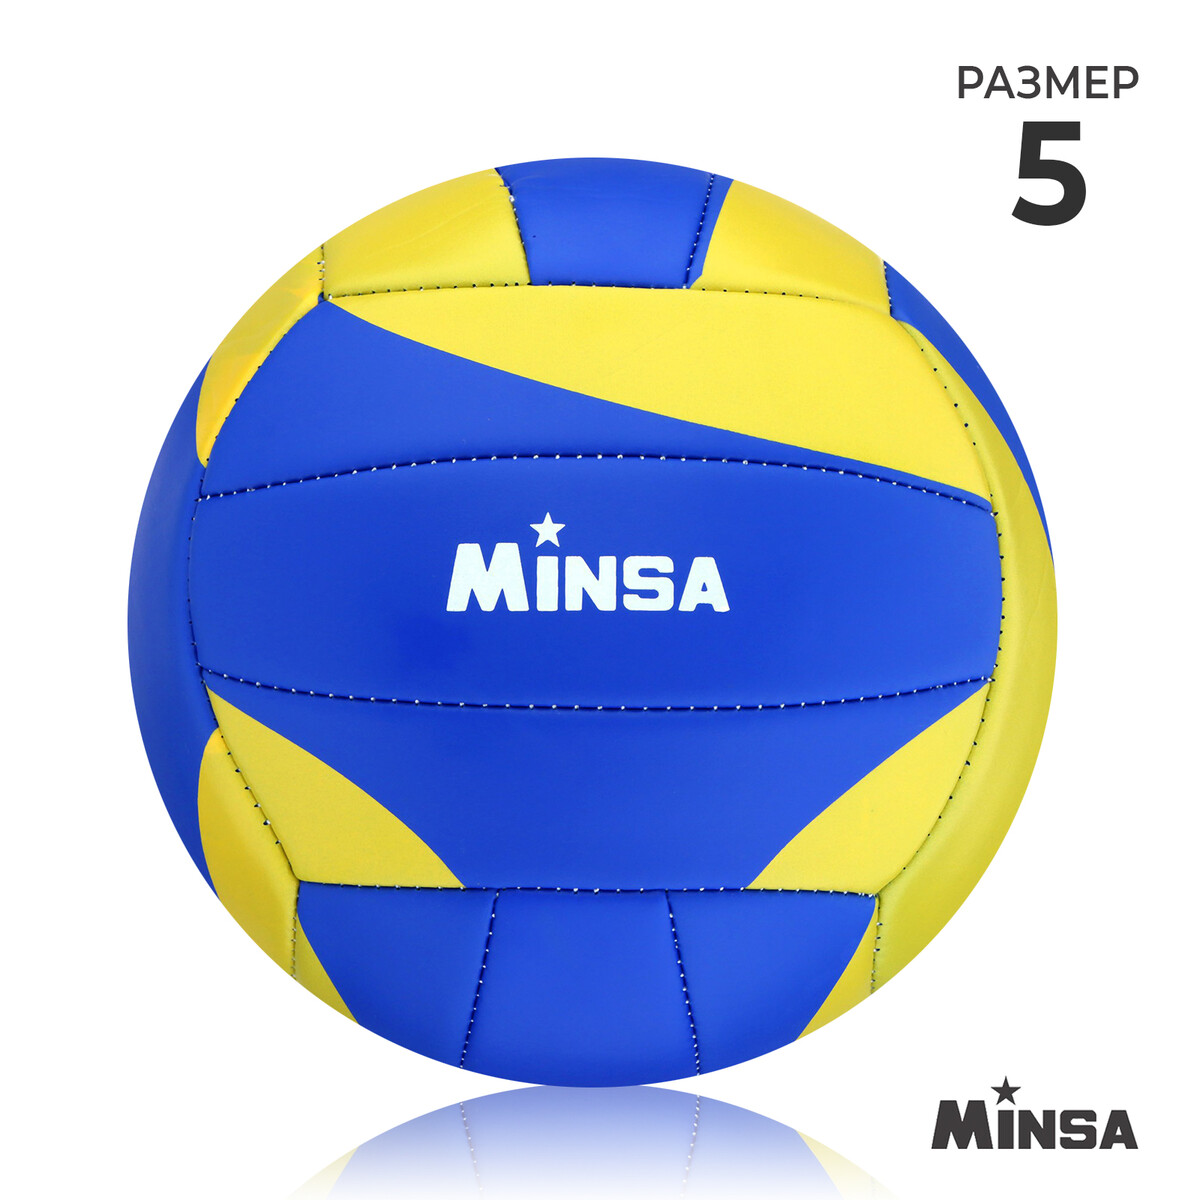 Мяч волейбольный minsa, pu, машинная сшивка, 18 панелей, р. 5 мяч волейбольный пляжный larsen beach volleyball blue р 5